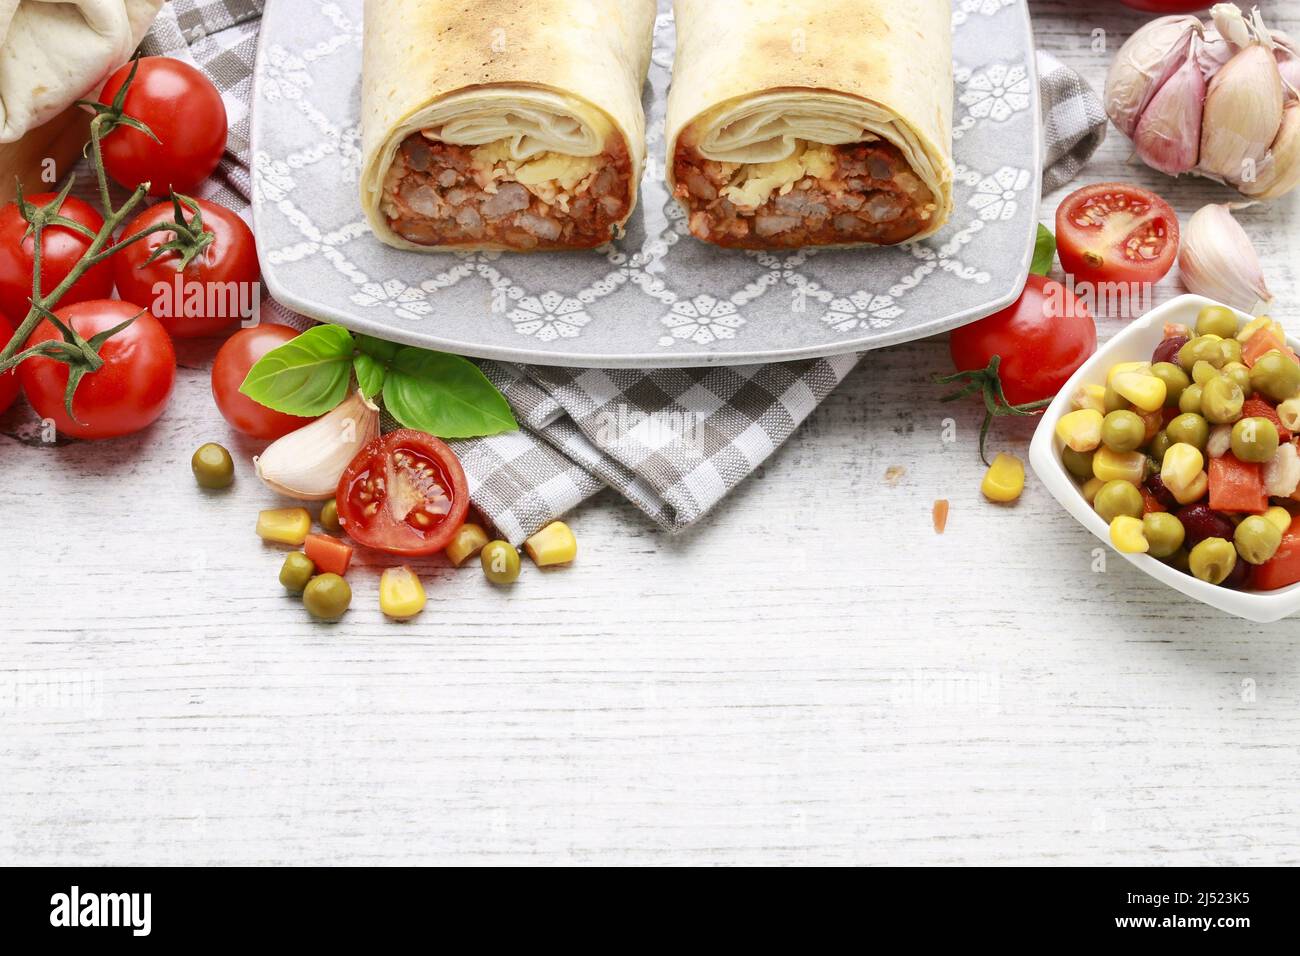 Ein Burrito - mexikanisches Gericht, das aus einer Mehl-Tortilla mit verschiedenen Zutaten besteht. Traditionelles Gericht Stockfoto